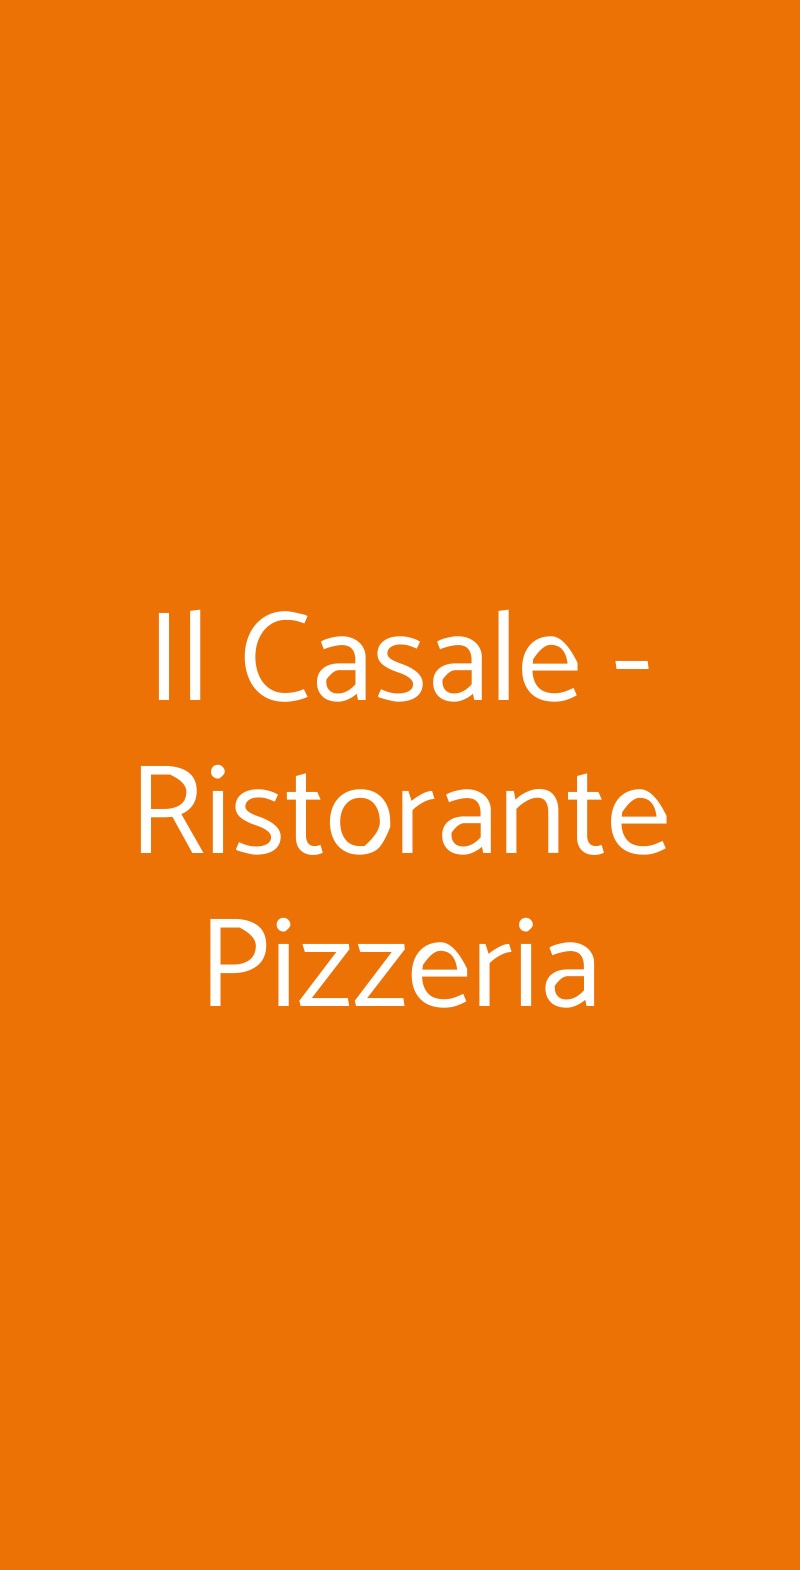 Il Casale - Ristorante Pizzeria Somaglia menù 1 pagina